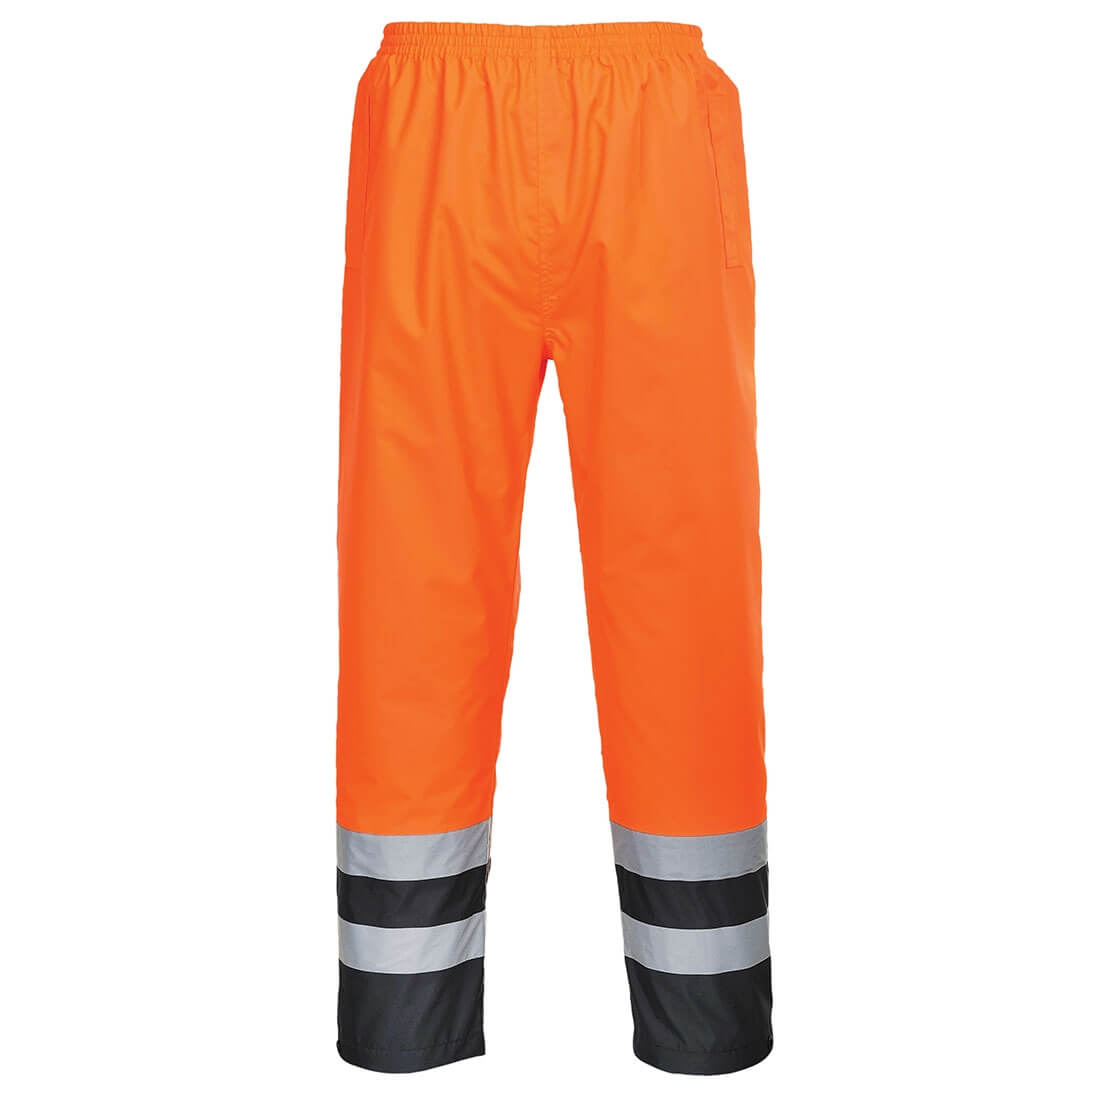 Pantalon Hi-Vis Bicolore - Les vêtements de protection